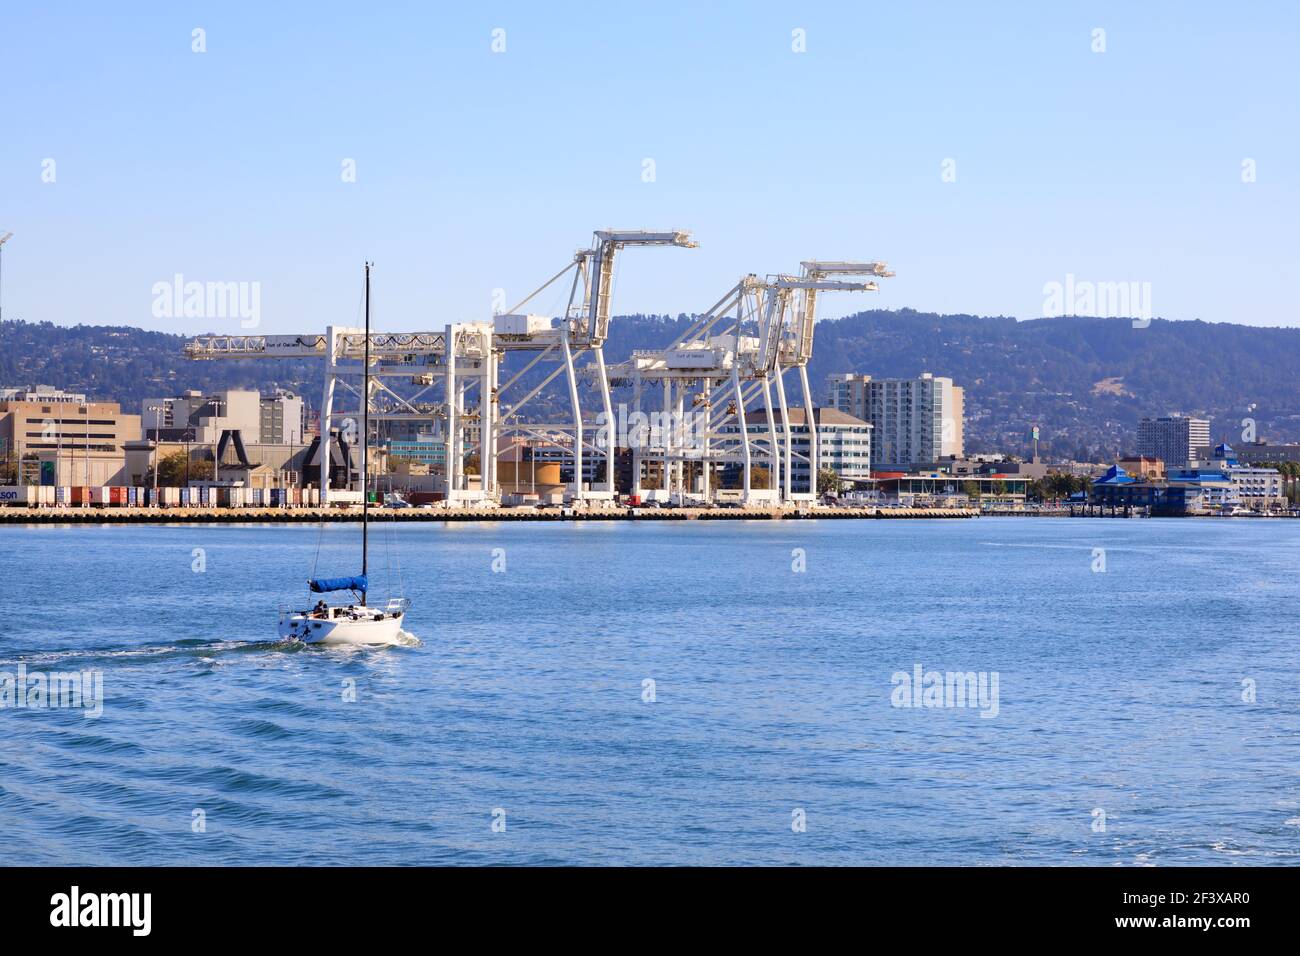 Eine einone Yacht fährt in Richtung Jack London Square, vorbei an den Kräne des Hafens von Oakland, San Francisco, Vereinigte Staaten von Amerika. Stockfoto